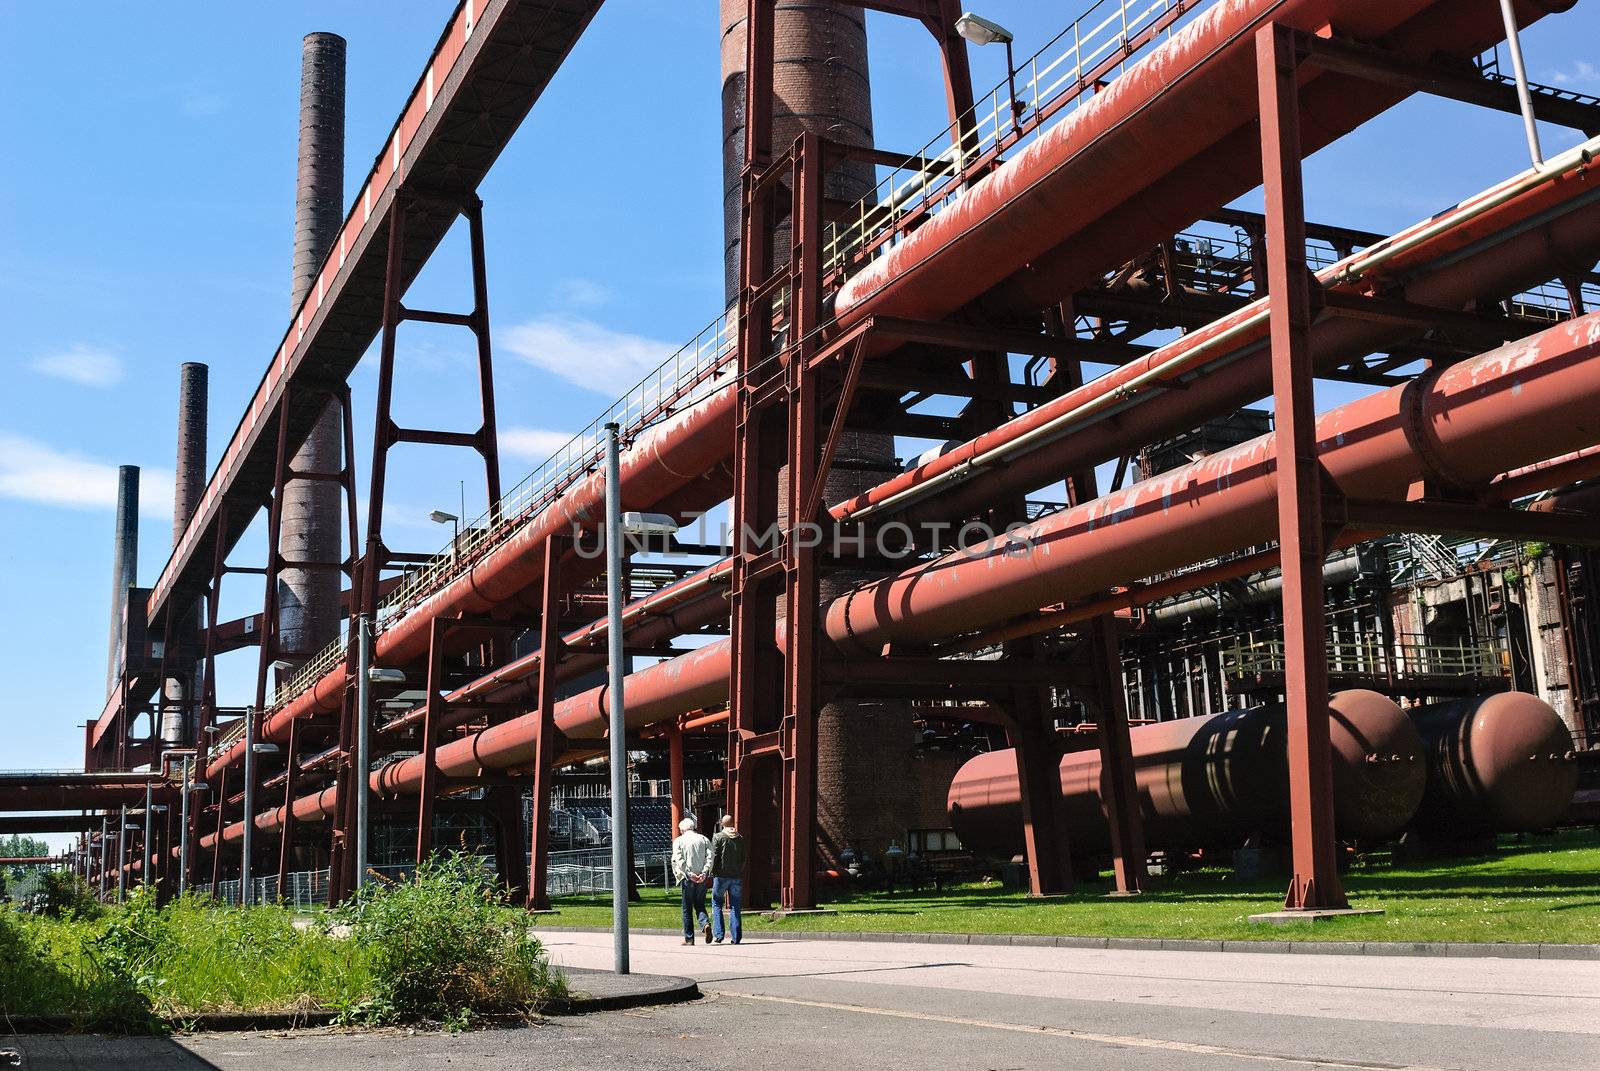 Zeche Zollverein coking plant (Essen, Germany)